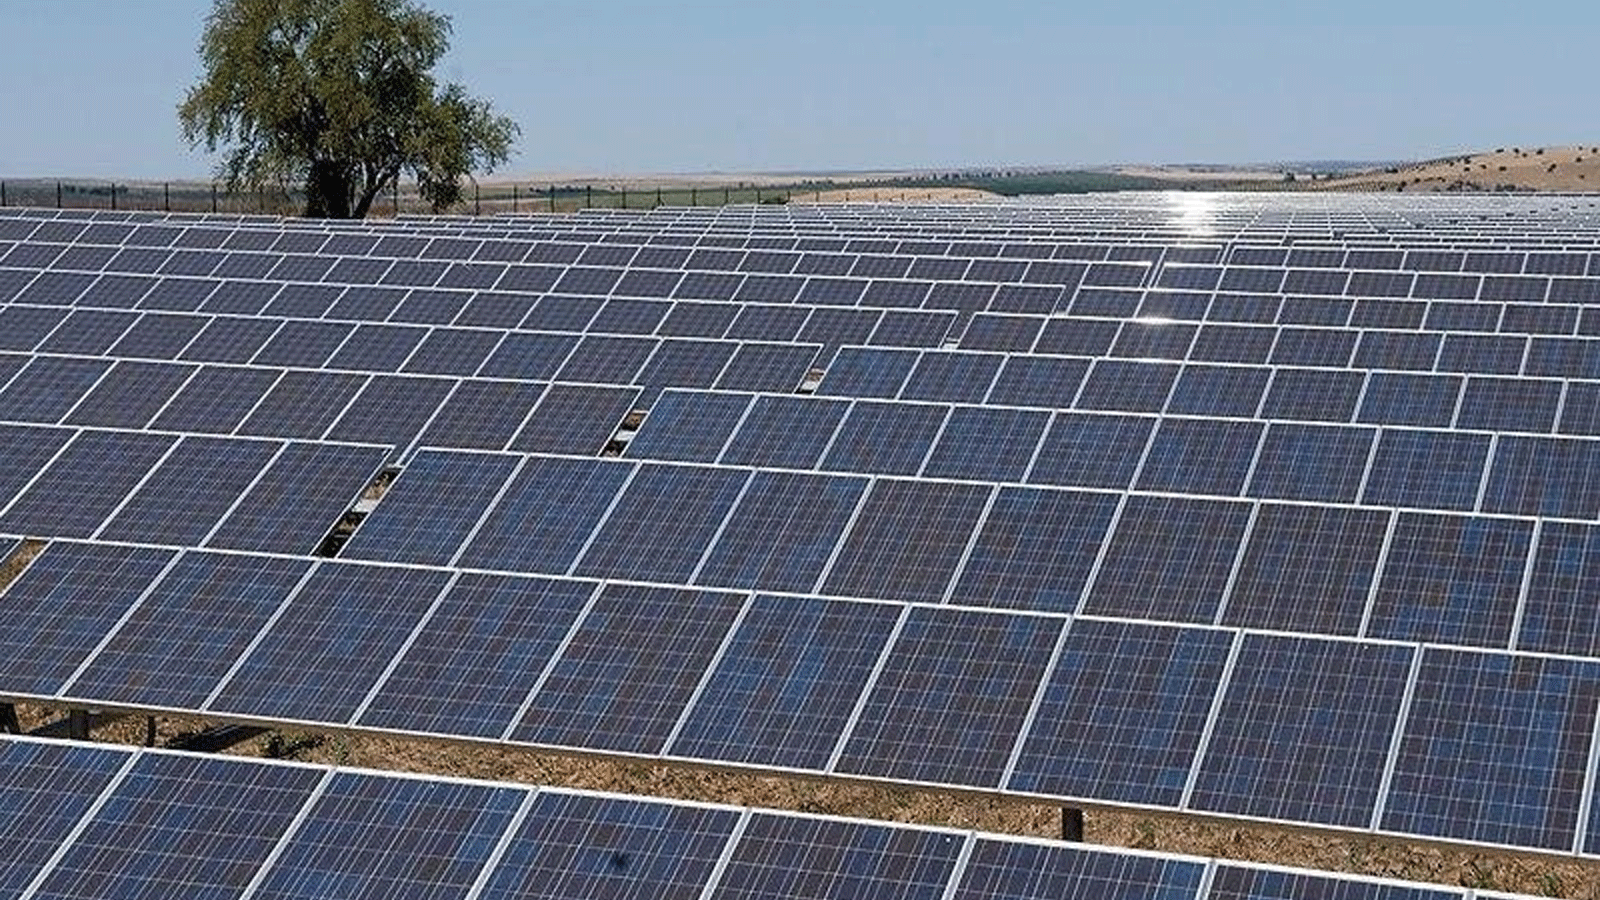 العراق يُعلِن الاثنين 27 حزيران\ يونيو 2022 البدء بأعمال إنتاج الكهرباء من الطاقة الشمسية بتعاون إماراتي